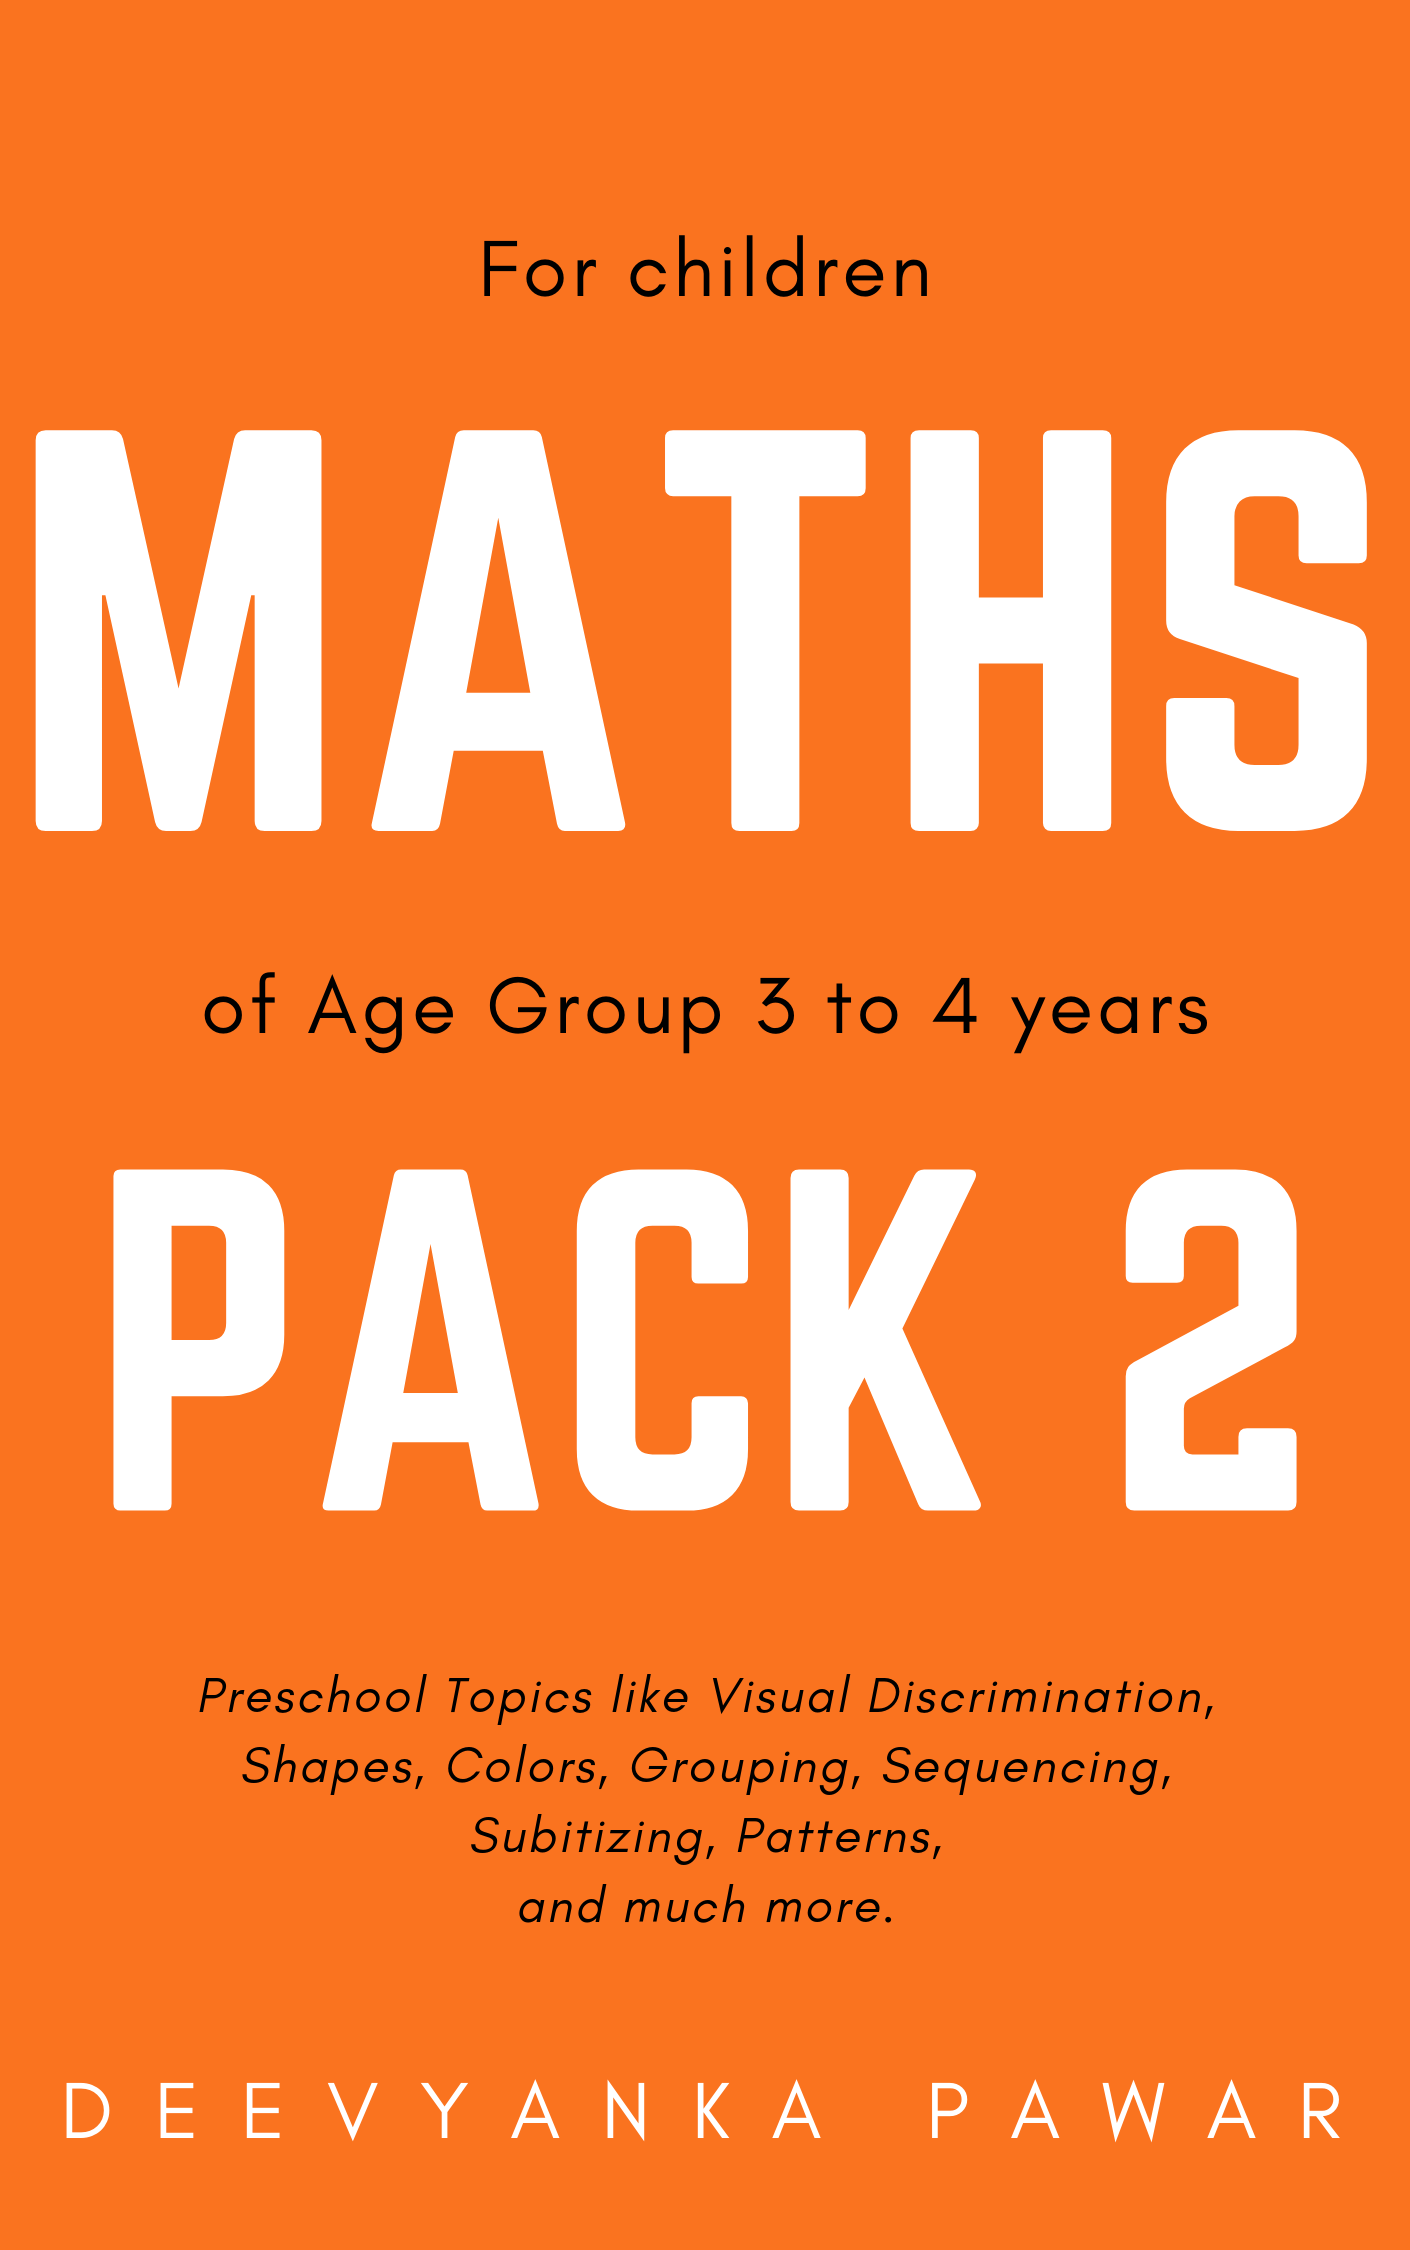 maths-pack-2-printable-worksheets-digital-workbook-pdf-our